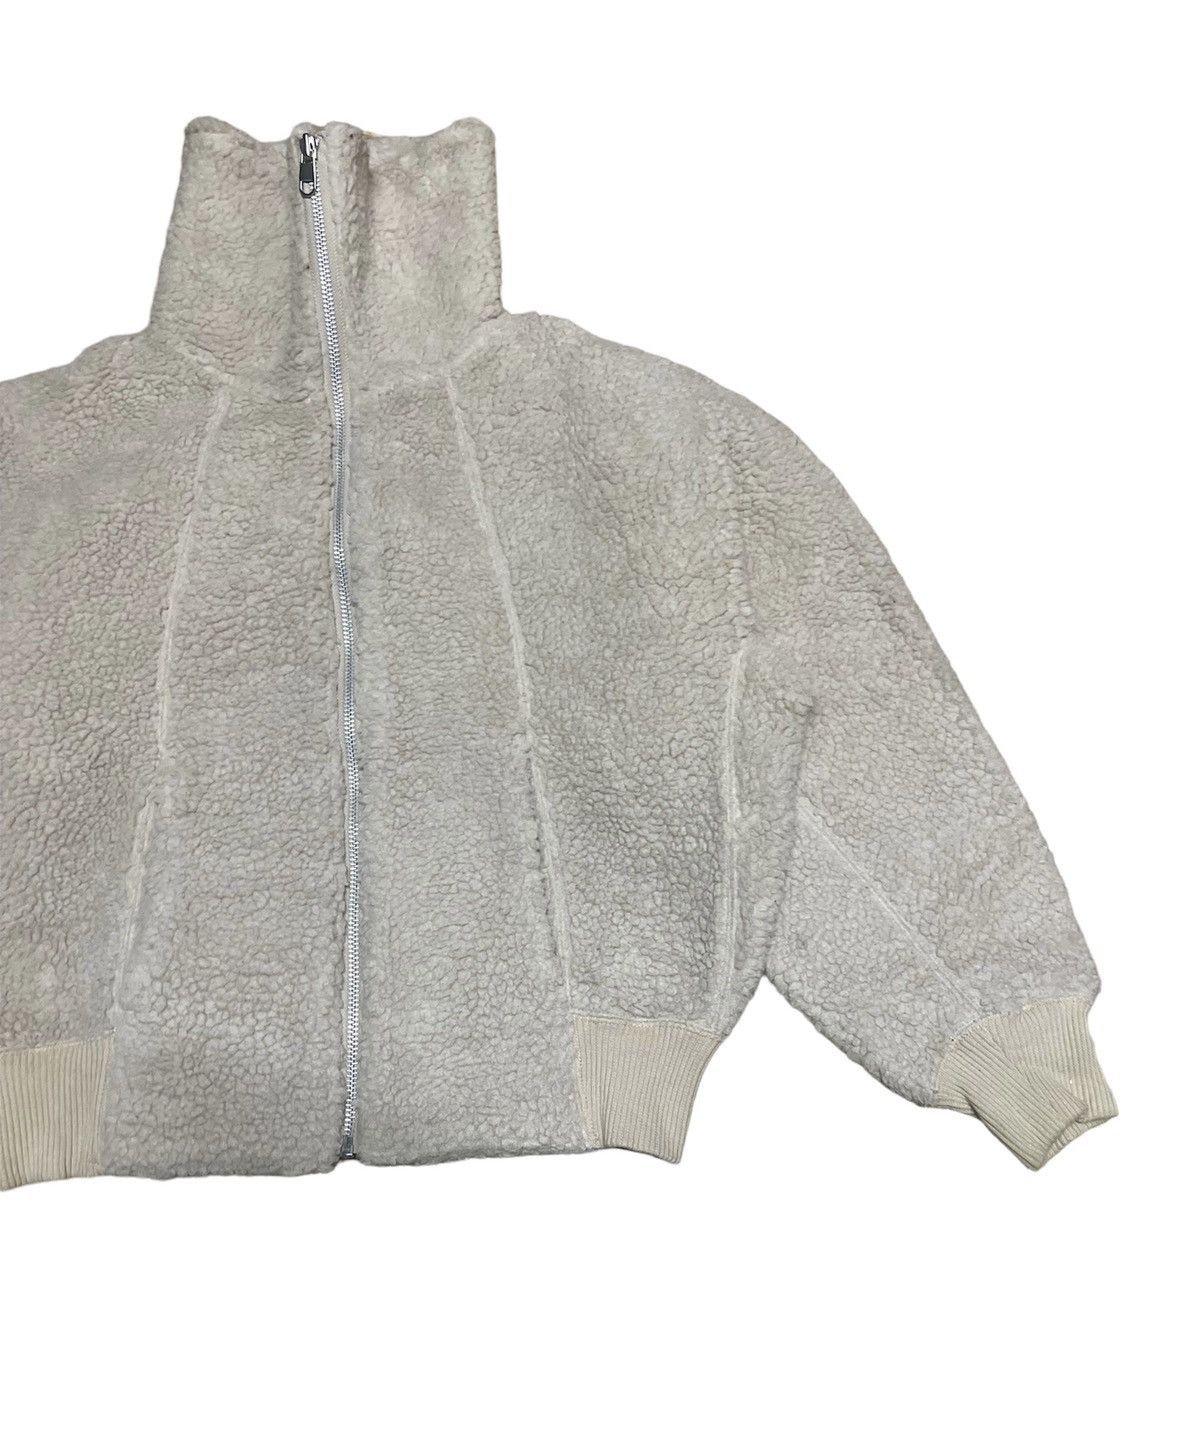 🔥NEED GONE🔥 Uniqlo Undercover Fleece Jacket - 9